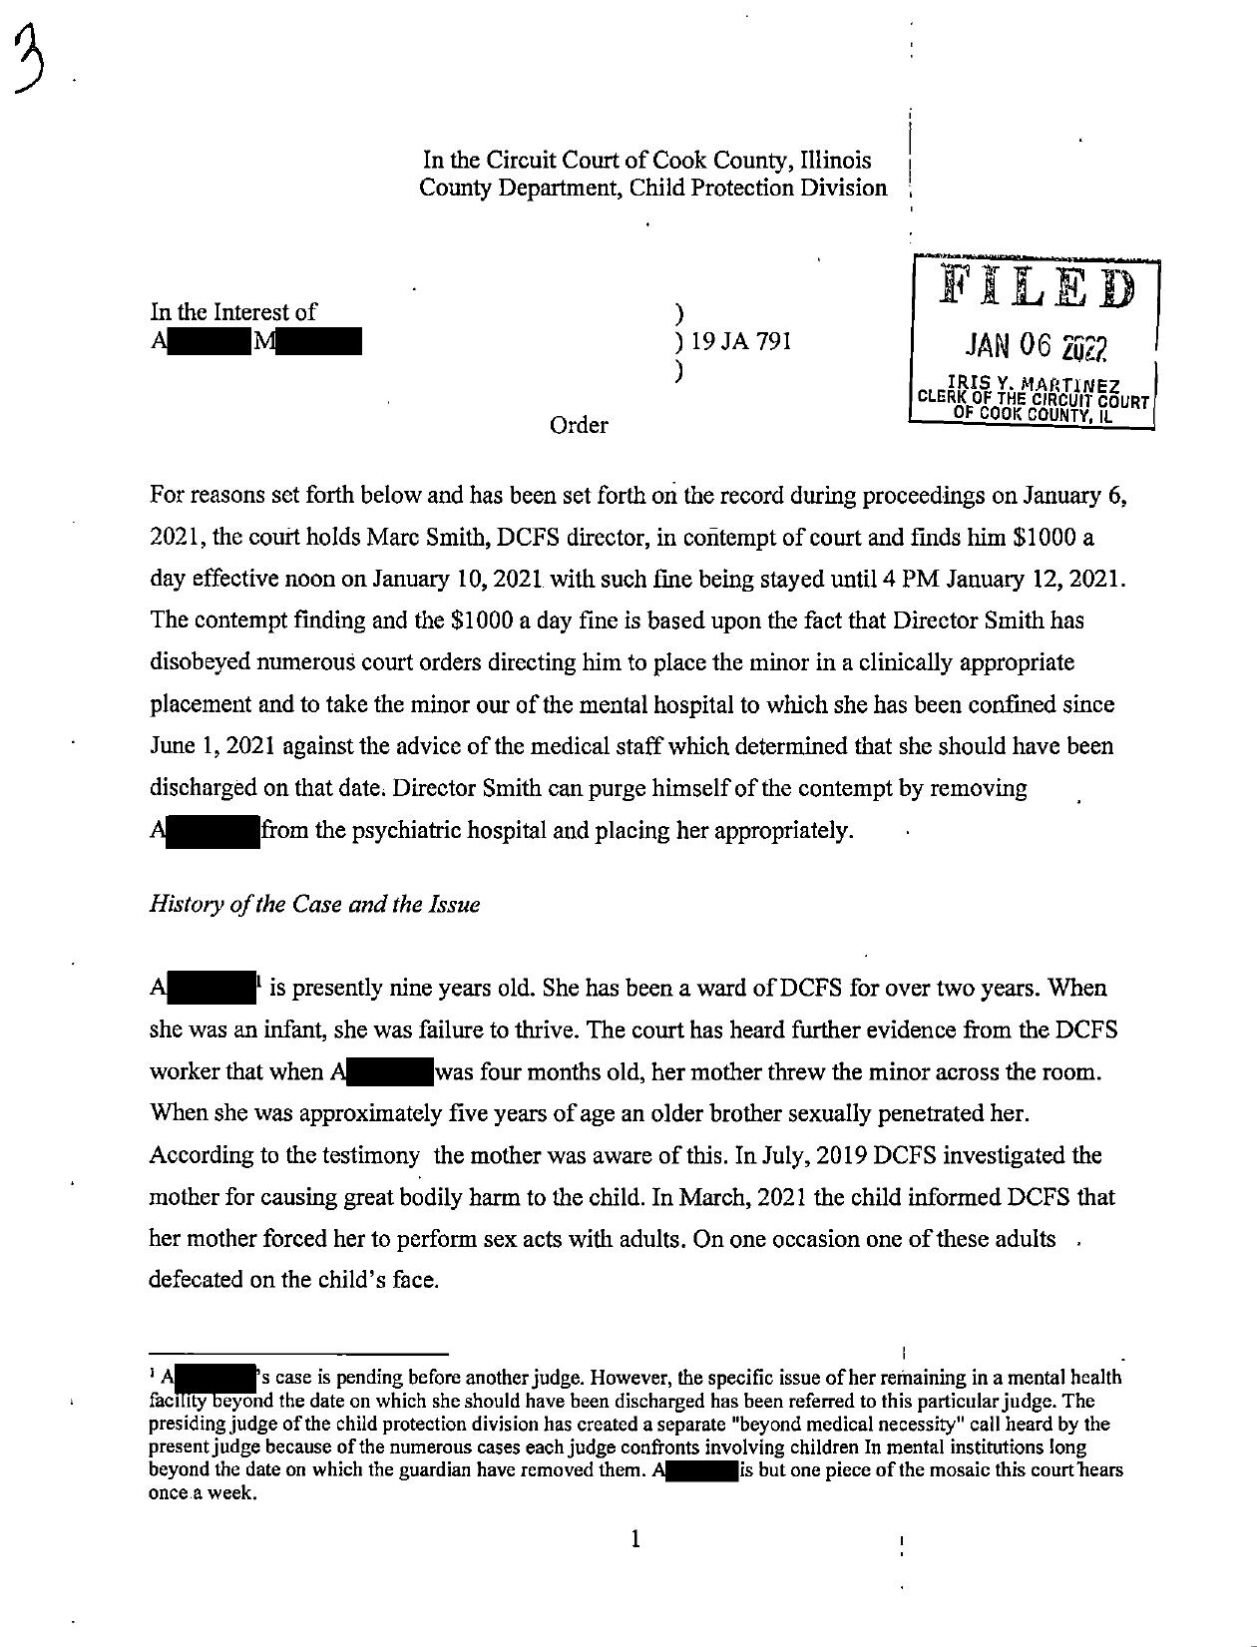 DCFS Director Contempt Case 1.pdf